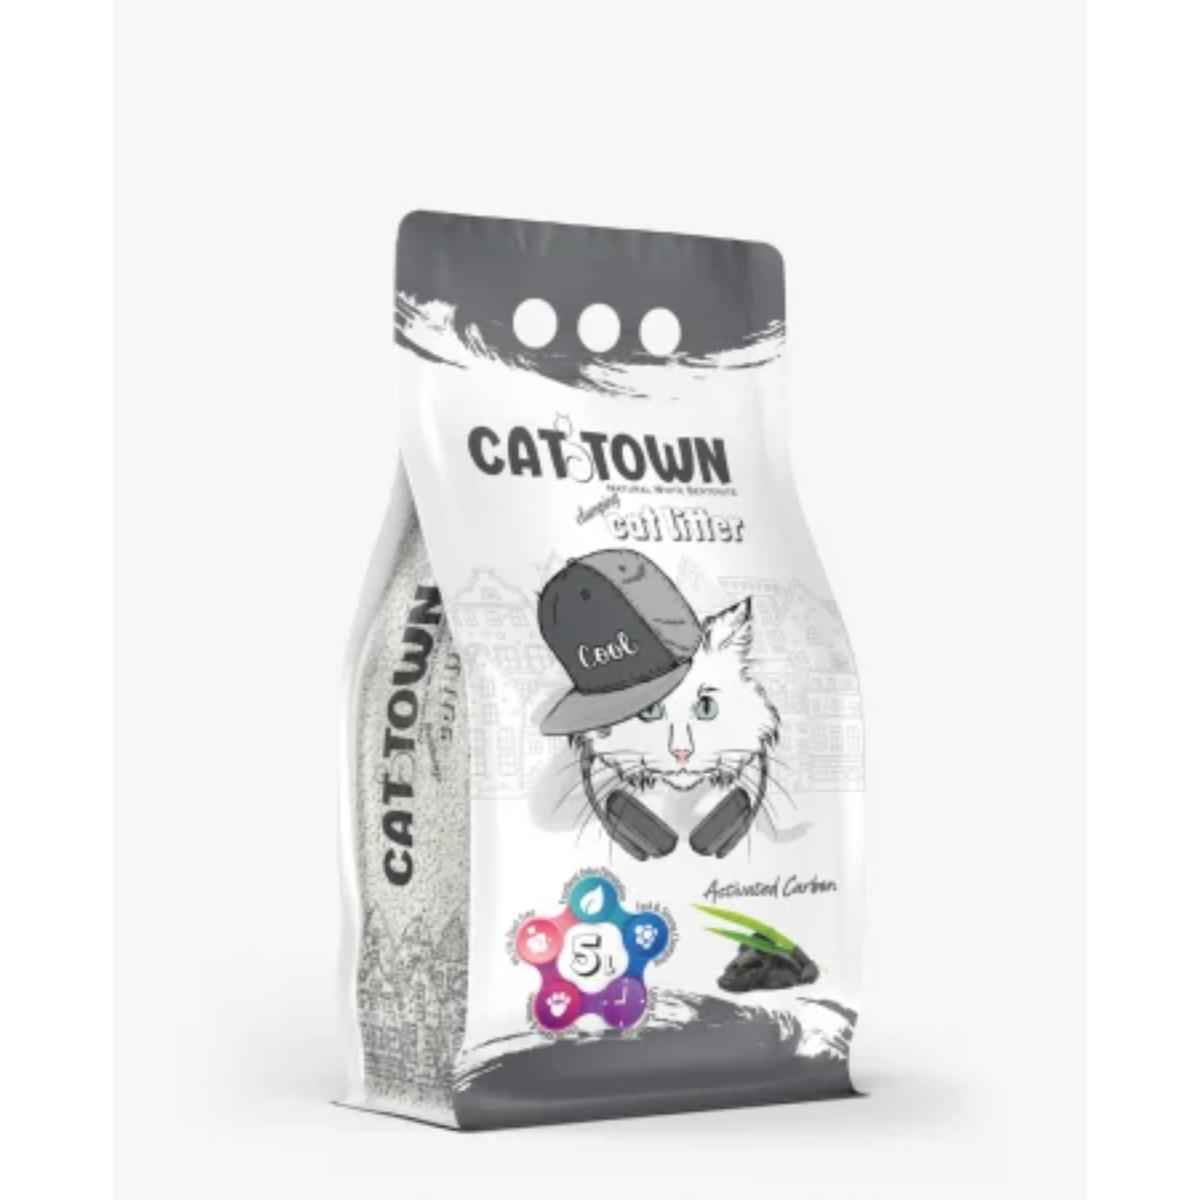 CAT TOWN Active Carbon, neparfumat, așternut igienic pisici, granule, bentonită, aglomerant, fără praf, 5l